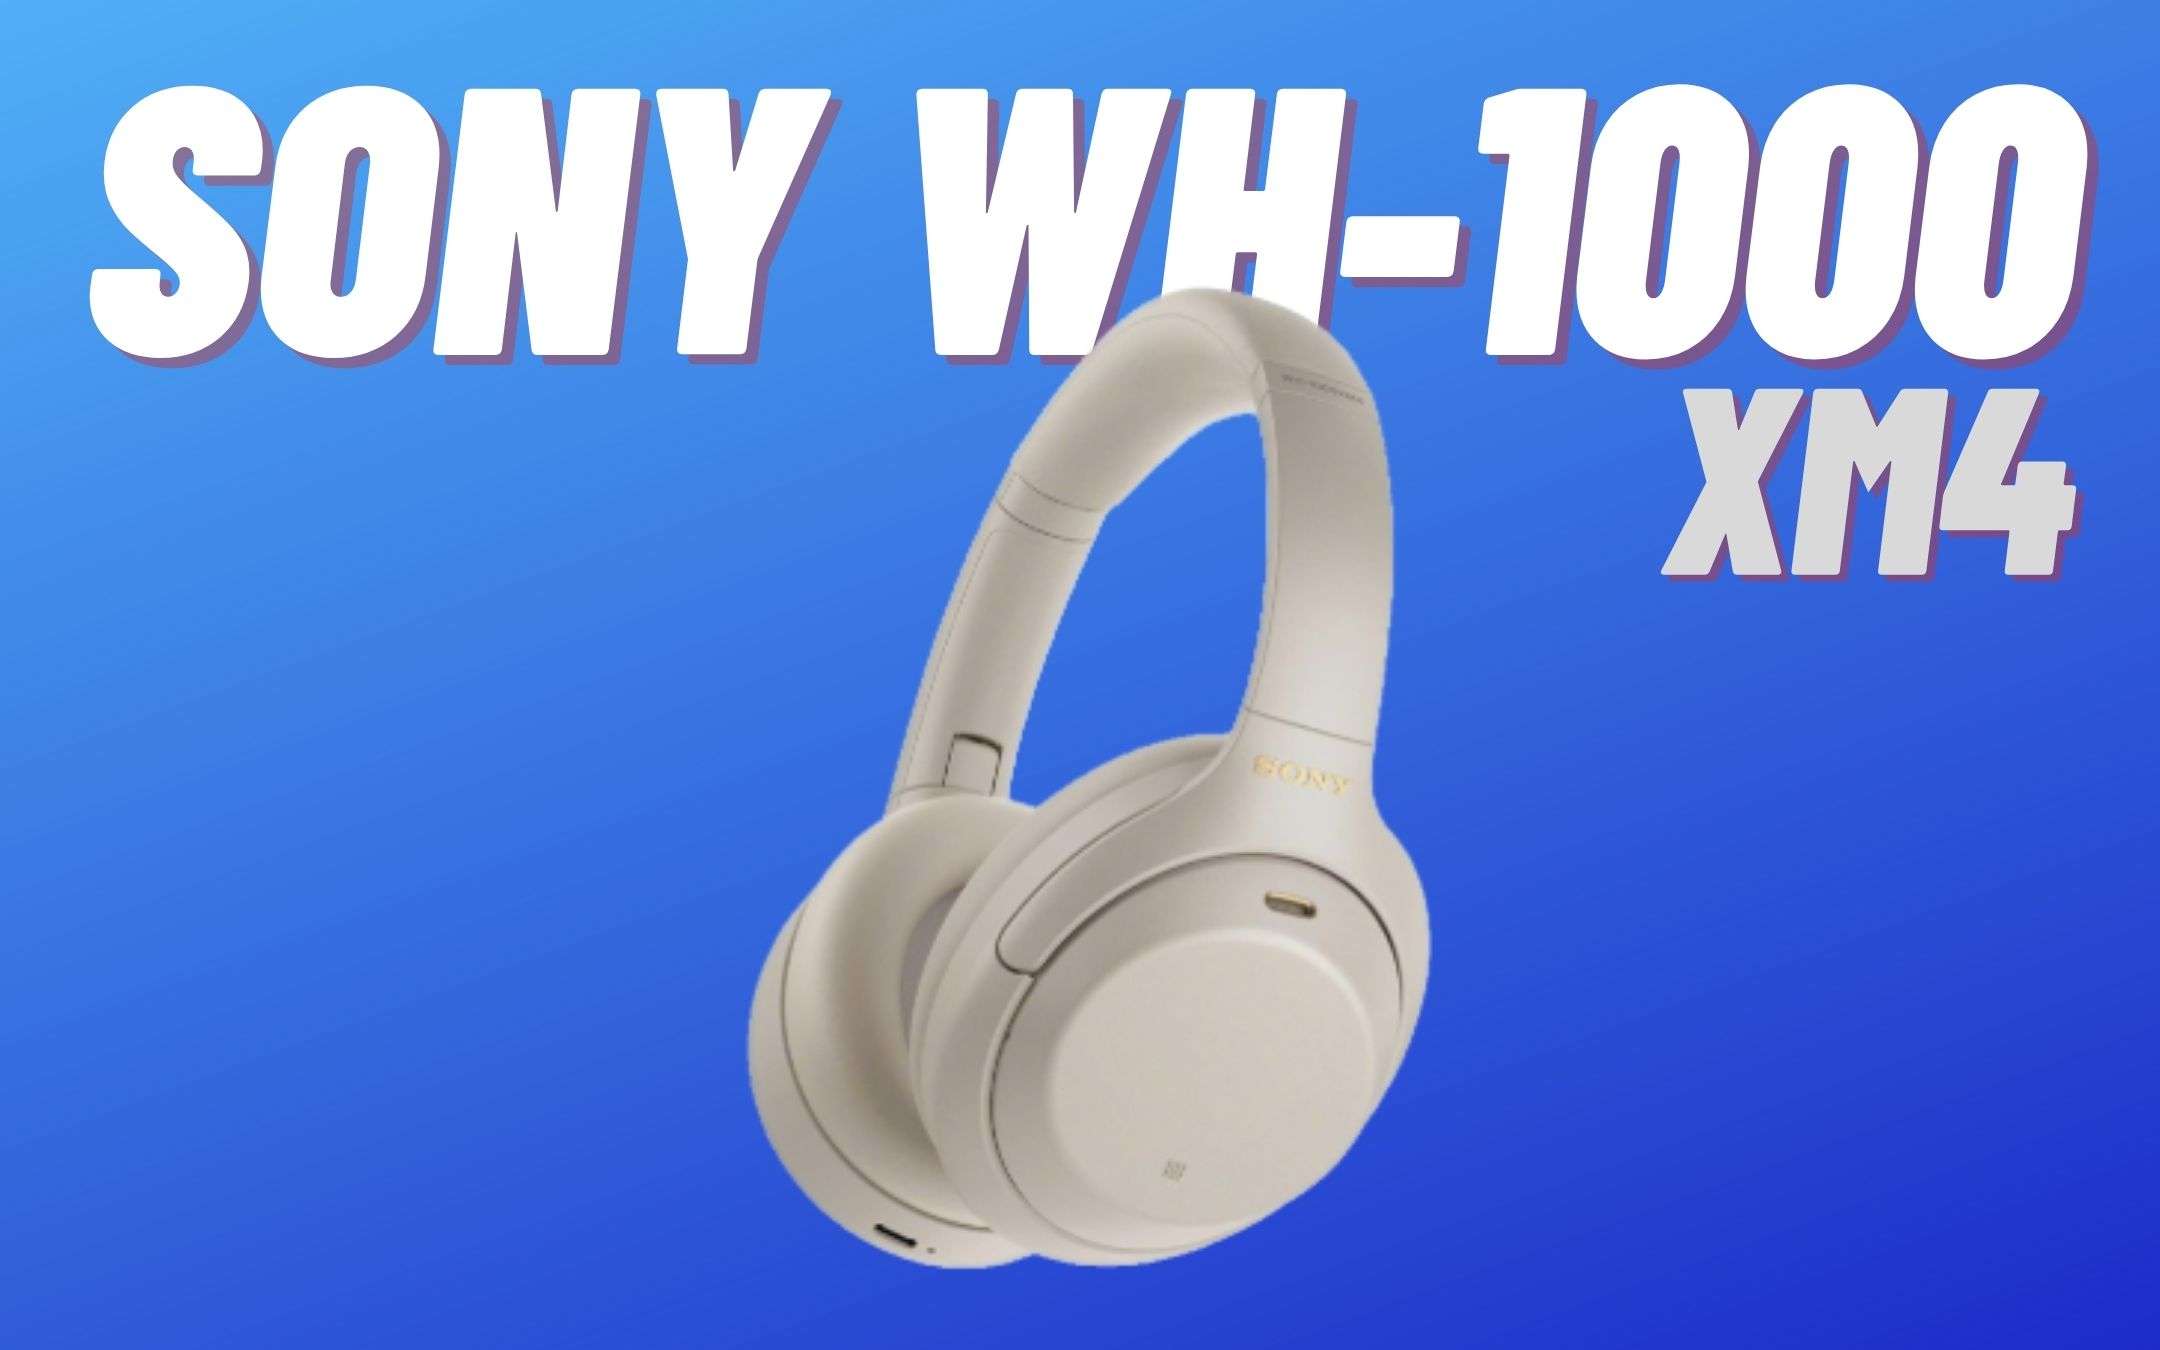 Sony WH-1000XM4 al minimo storico (-81€)